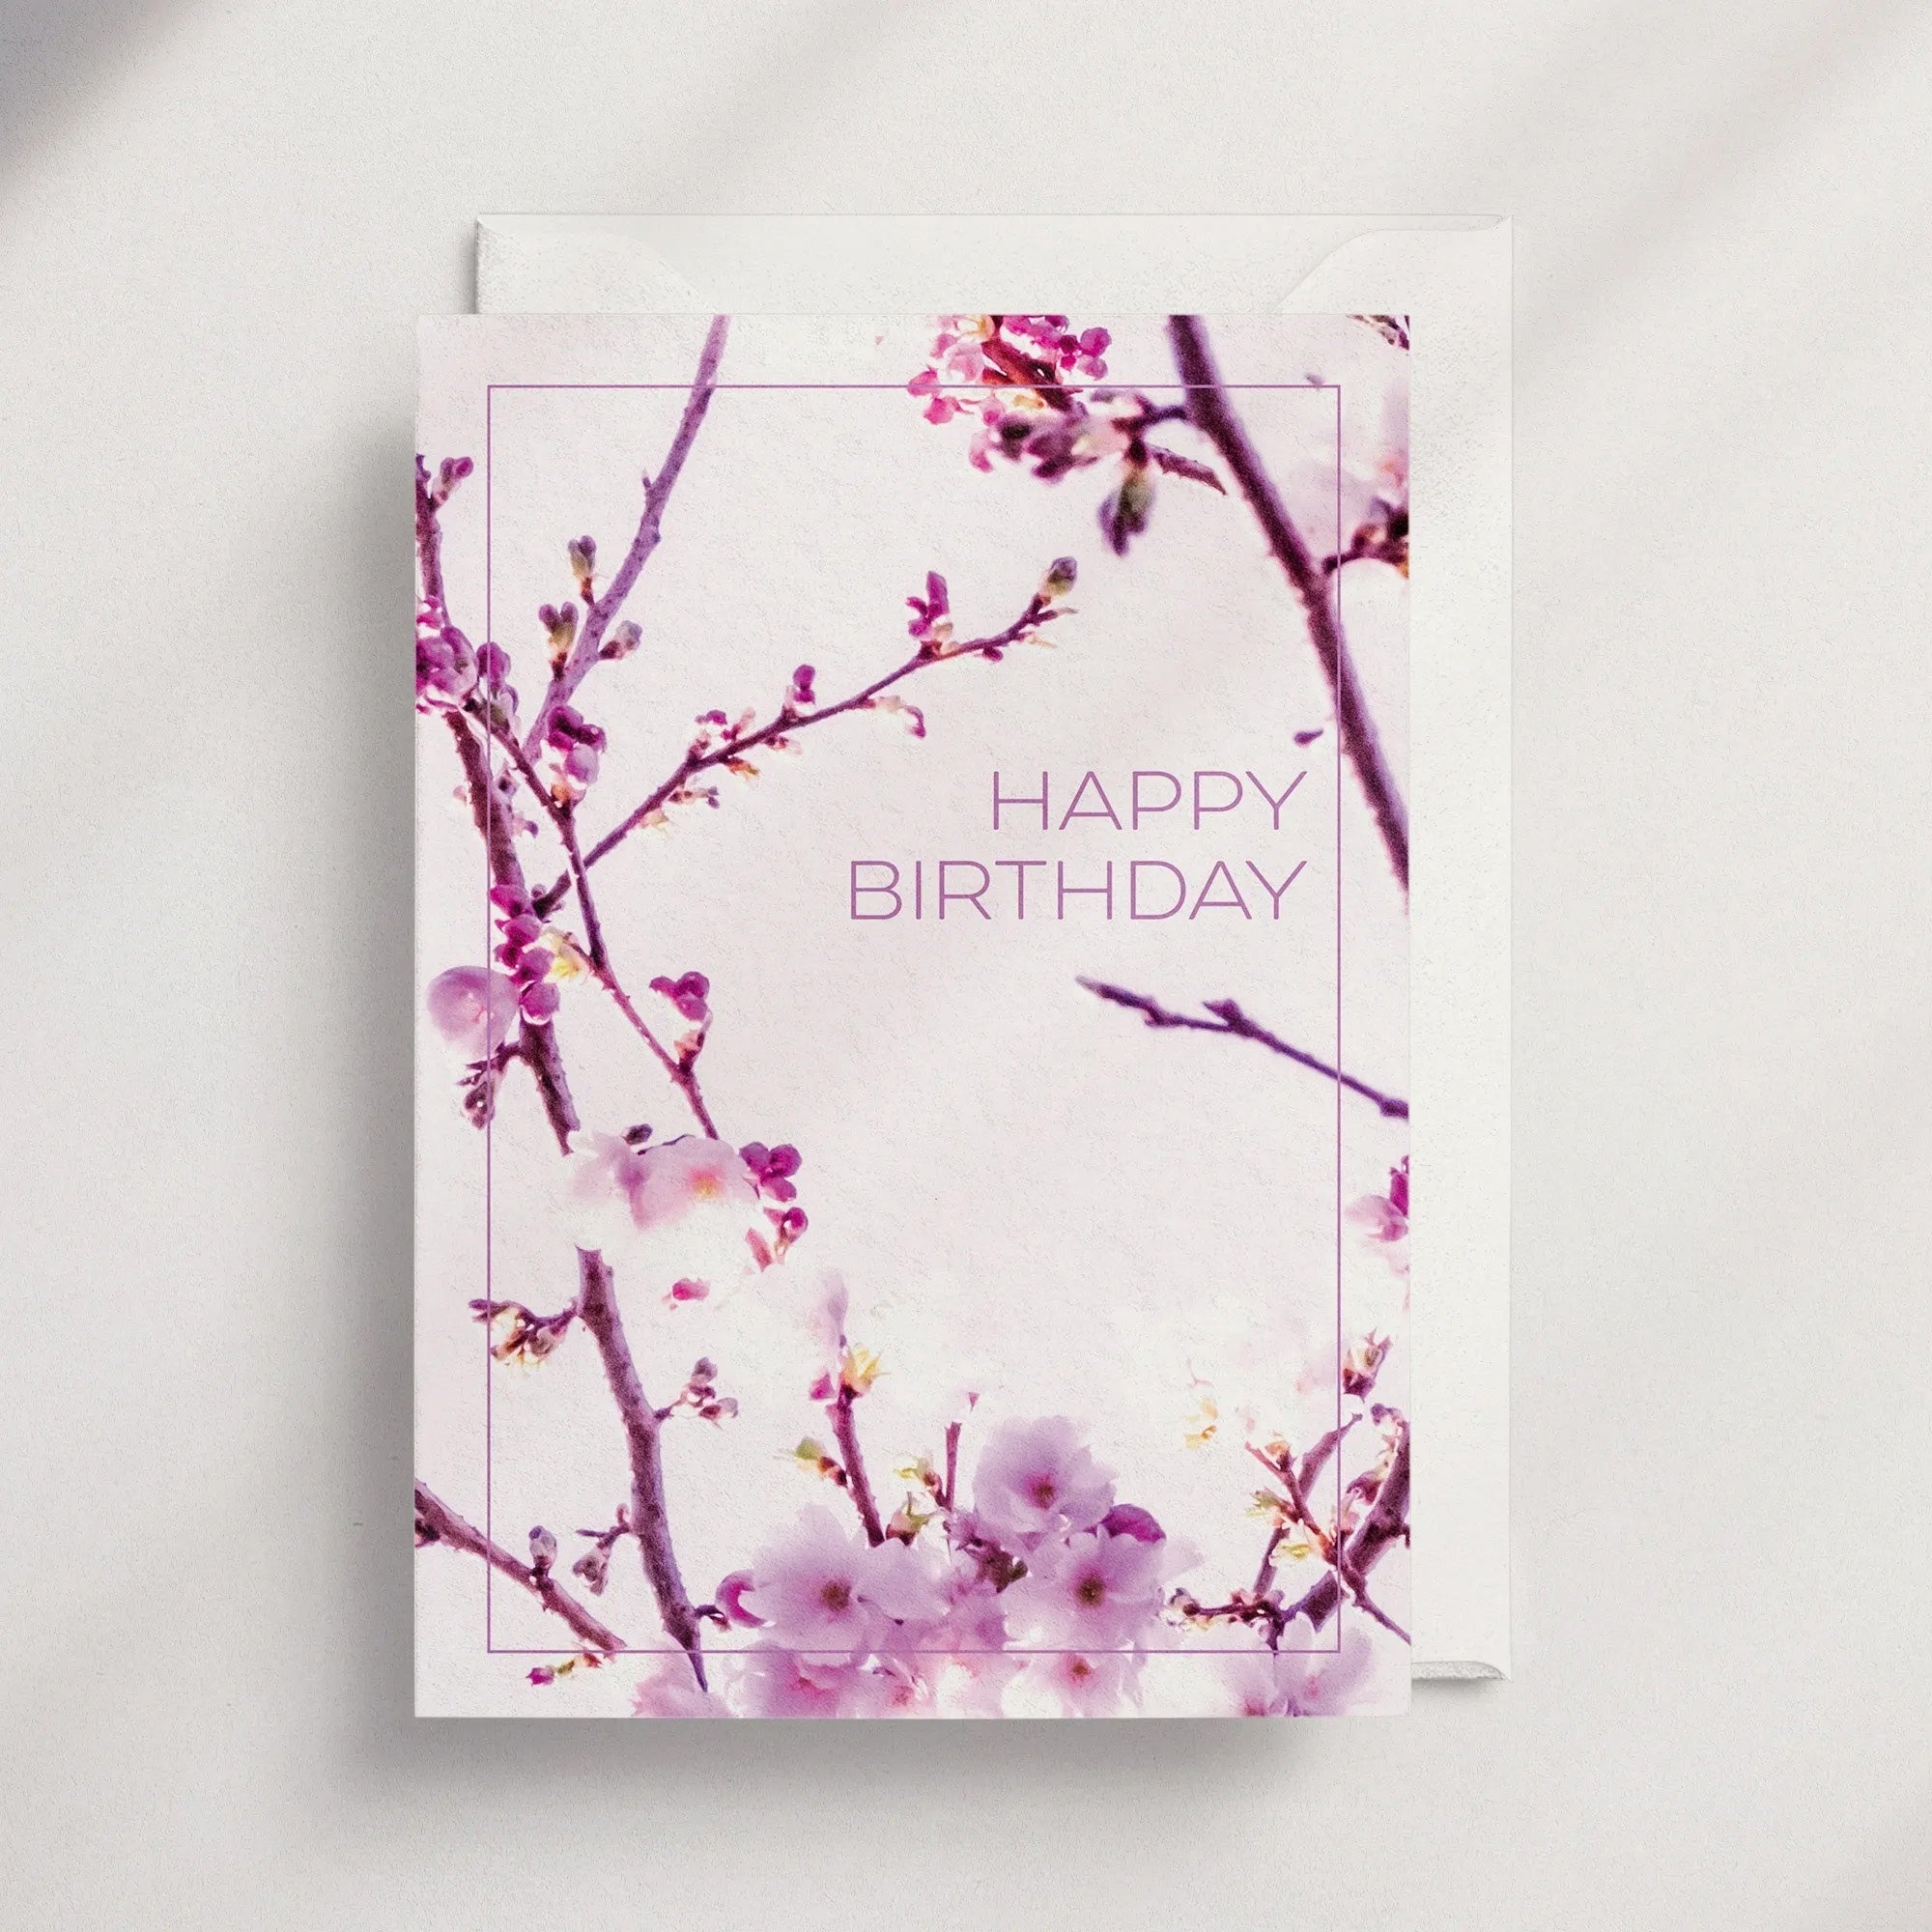 Happy Birthday [FL01] - Floral Greeting Card